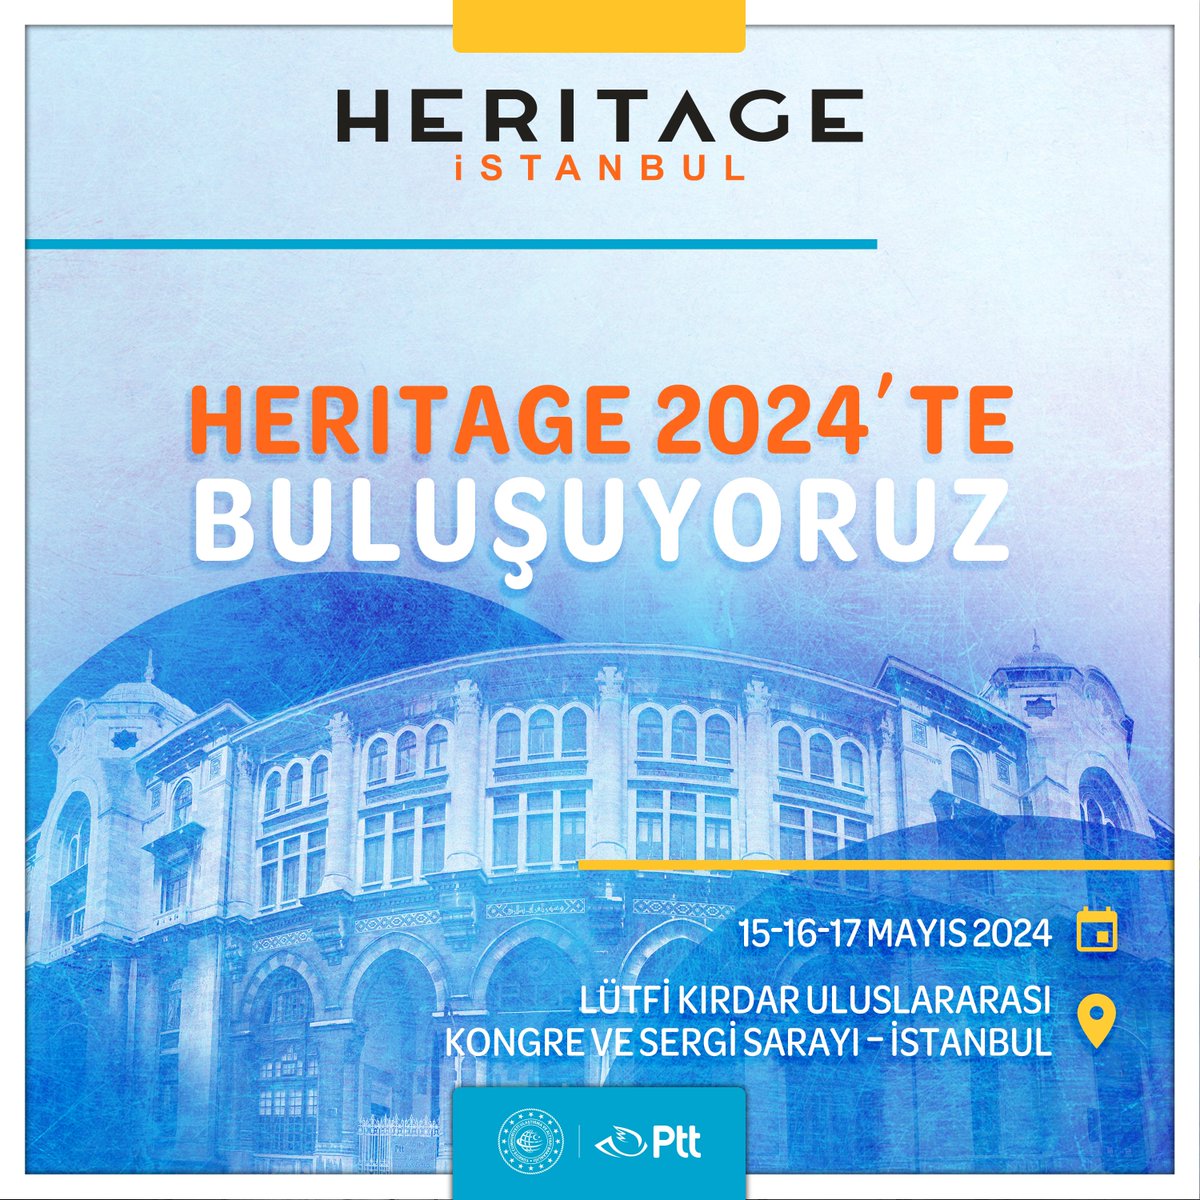 📣 Heritage İstanbul 2024 başlıyor!

8. Heritage Uluslararası Koruma, Restorasyon, Arkeoloji, Müzecilik Teknolojileri Fuar ve Konferansı’nda buluşalım.

#Heritageİstanbul

🗓15-17 Mayıs 2024
📍Lütfi Kırdar Uluslararası Kongre ve Sergi Sarayı – İstanbul